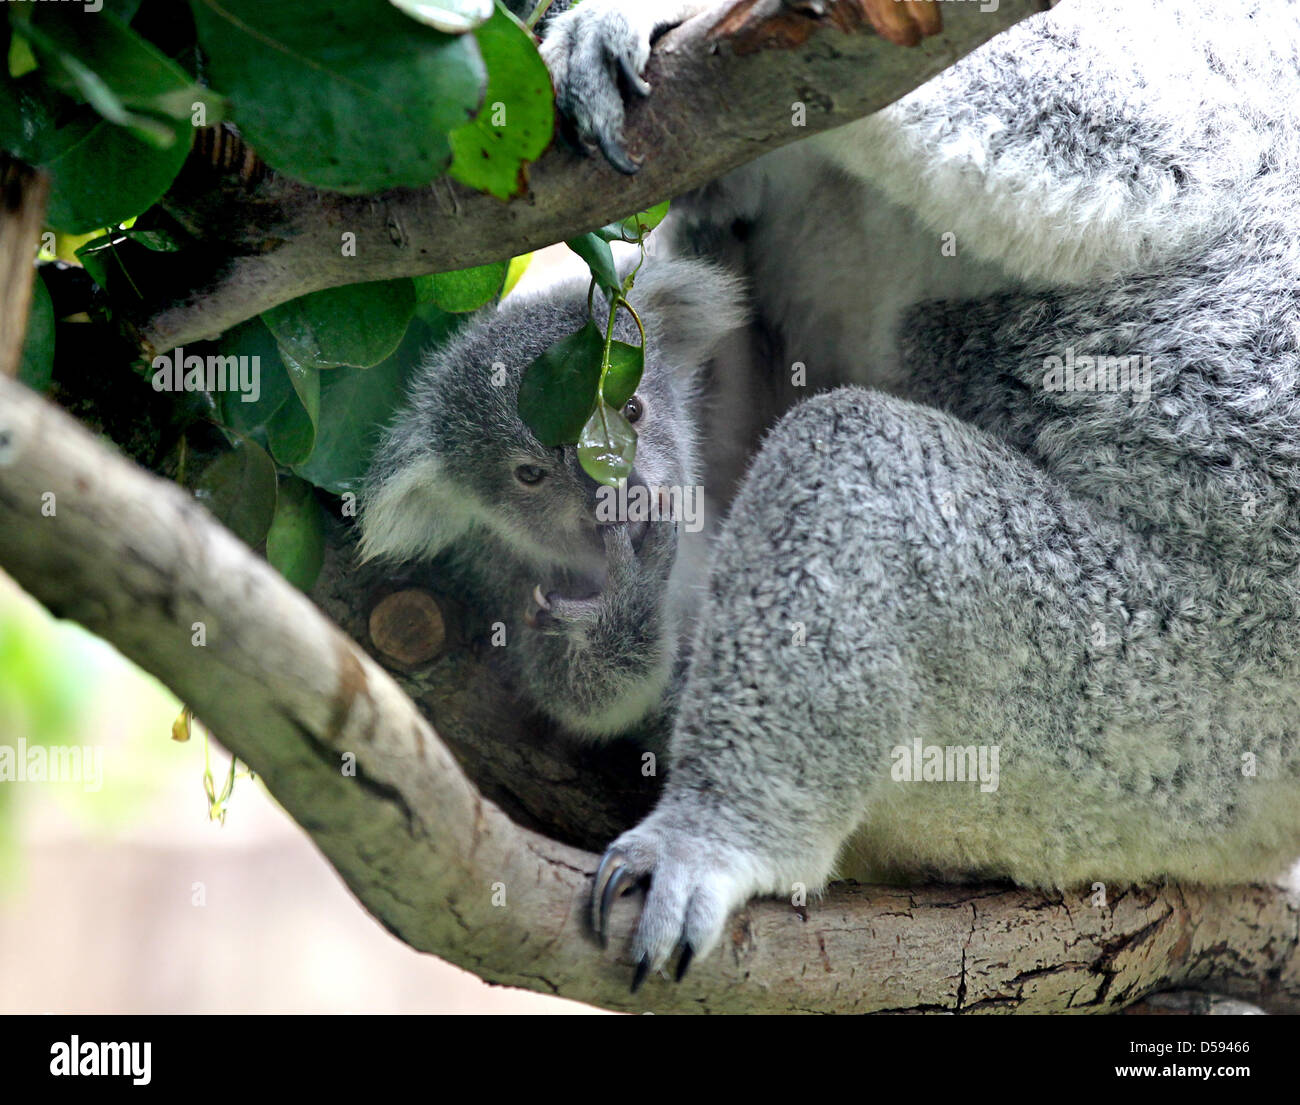 Das erst 215 Tage alte Koala Baby Joe erkundet mit seiner Mutter Goonderrah am Freitag (11.06.2010) das Gehege im Duisburger Zoo. Das kleine Pelztierchen ist zum ersten mal öffentlich gewogen worden. Es wiegt 528 Gramm und fühlt sich außerhalb von Mamas Beutel sehr sicher.  Foto: Roland Weihrauch dpa/lnw Stock Photo